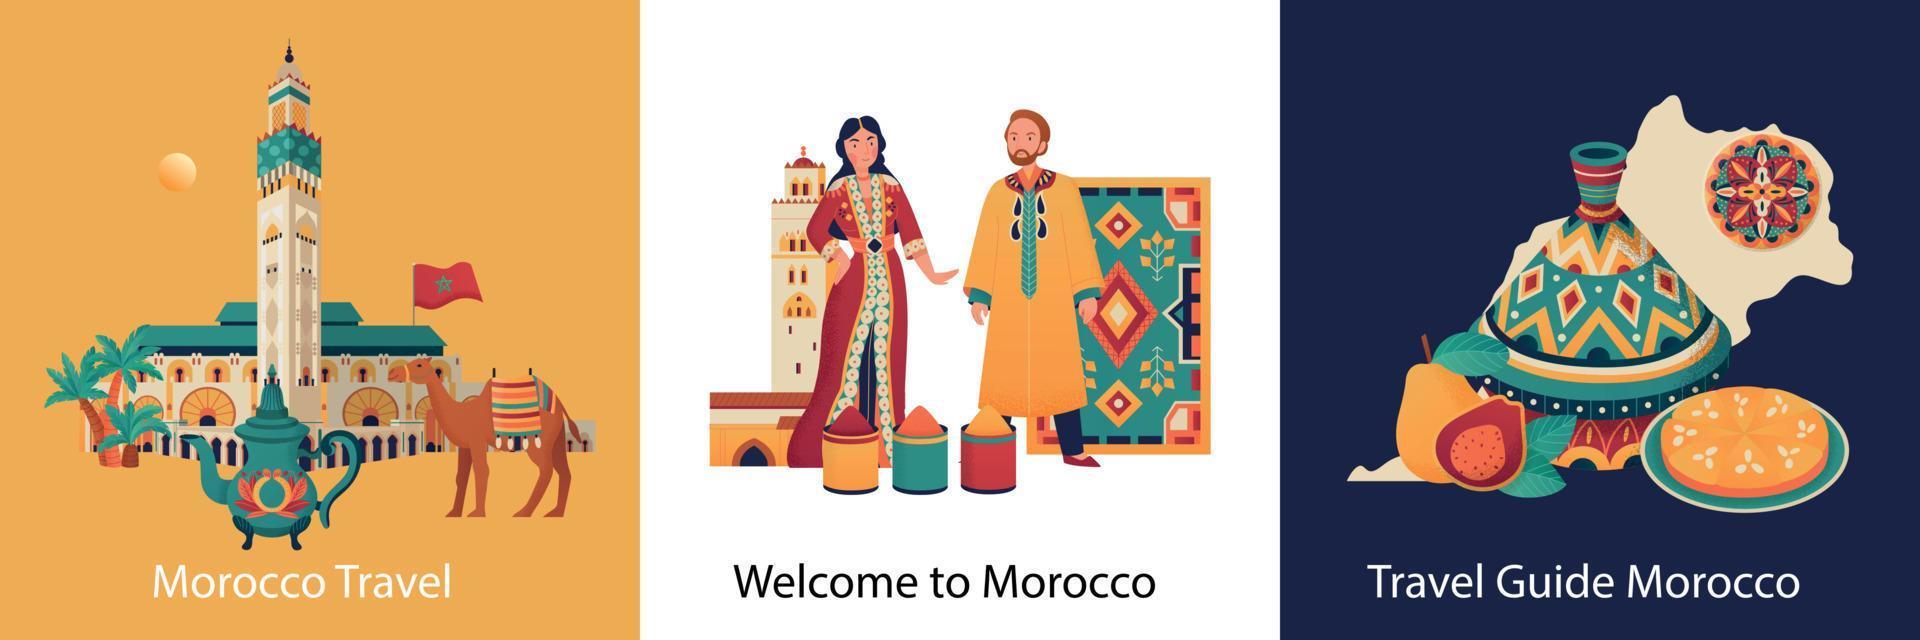 Morocco Design Concept vector